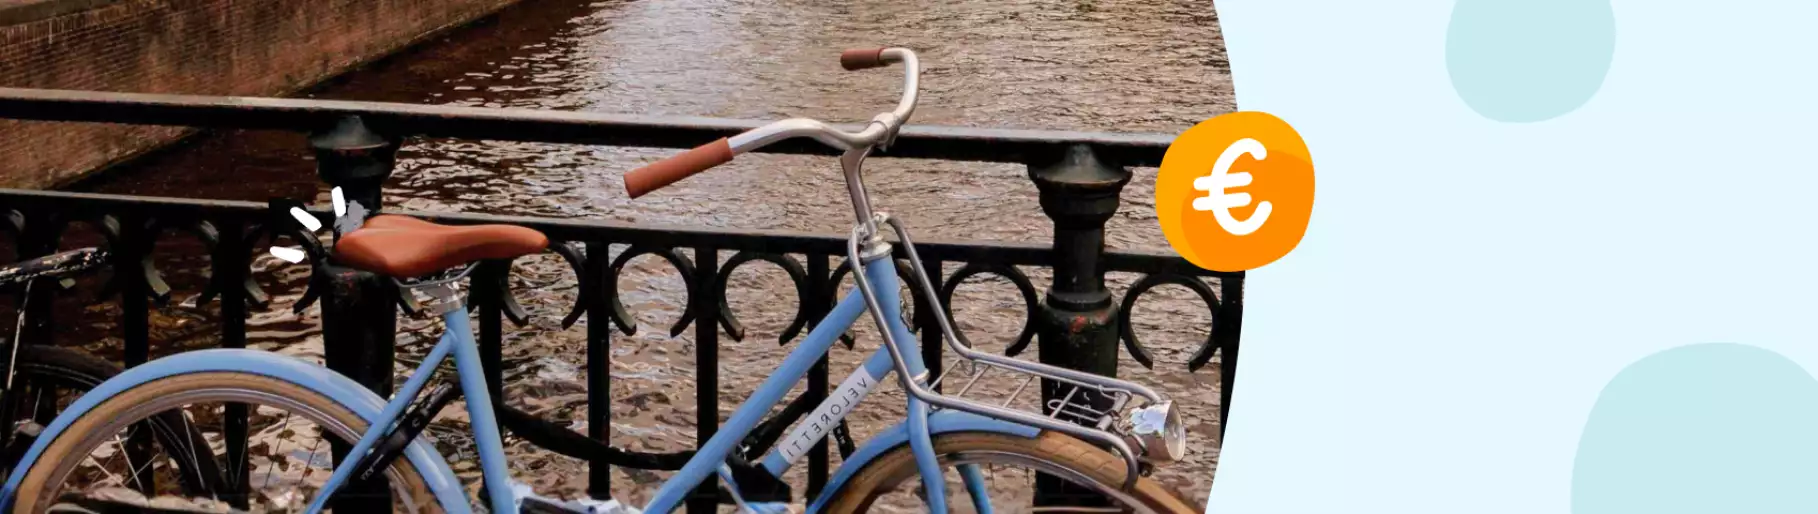 fiets bij een hek en water met euro teken